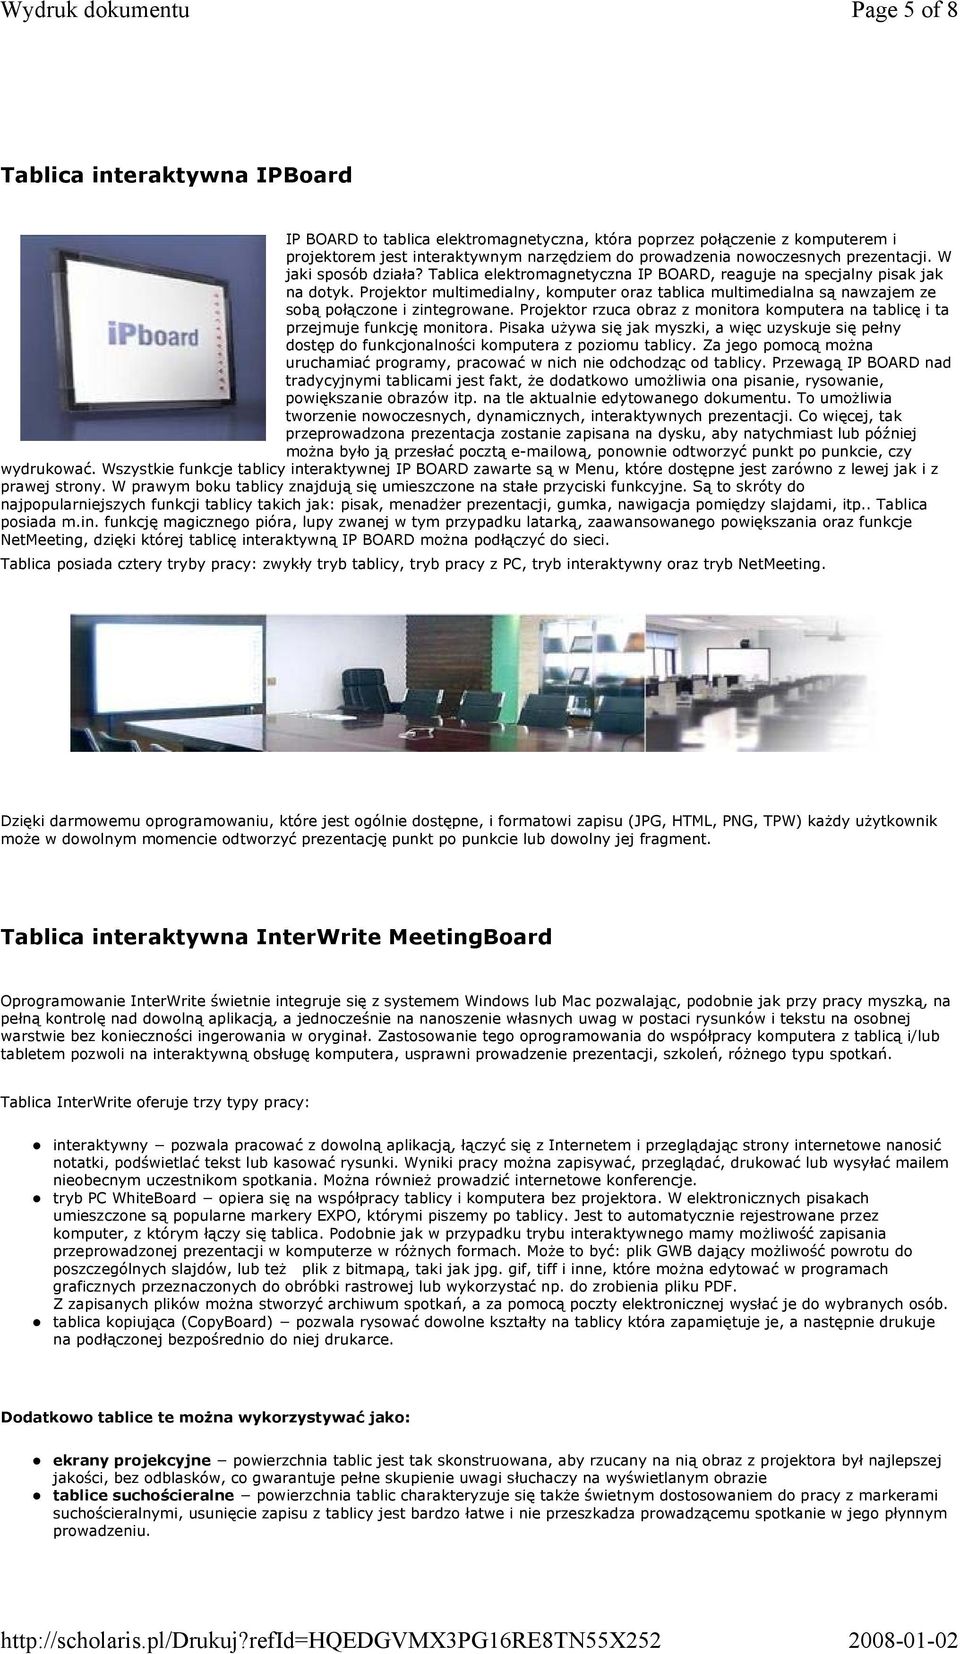 Projektor multimedialny, komputer oraz tablica multimedialna są nawzajem ze sobą połączone i zintegrowane. Projektor rzuca obraz z monitora komputera na tablicę i ta przejmuje funkcję monitora.